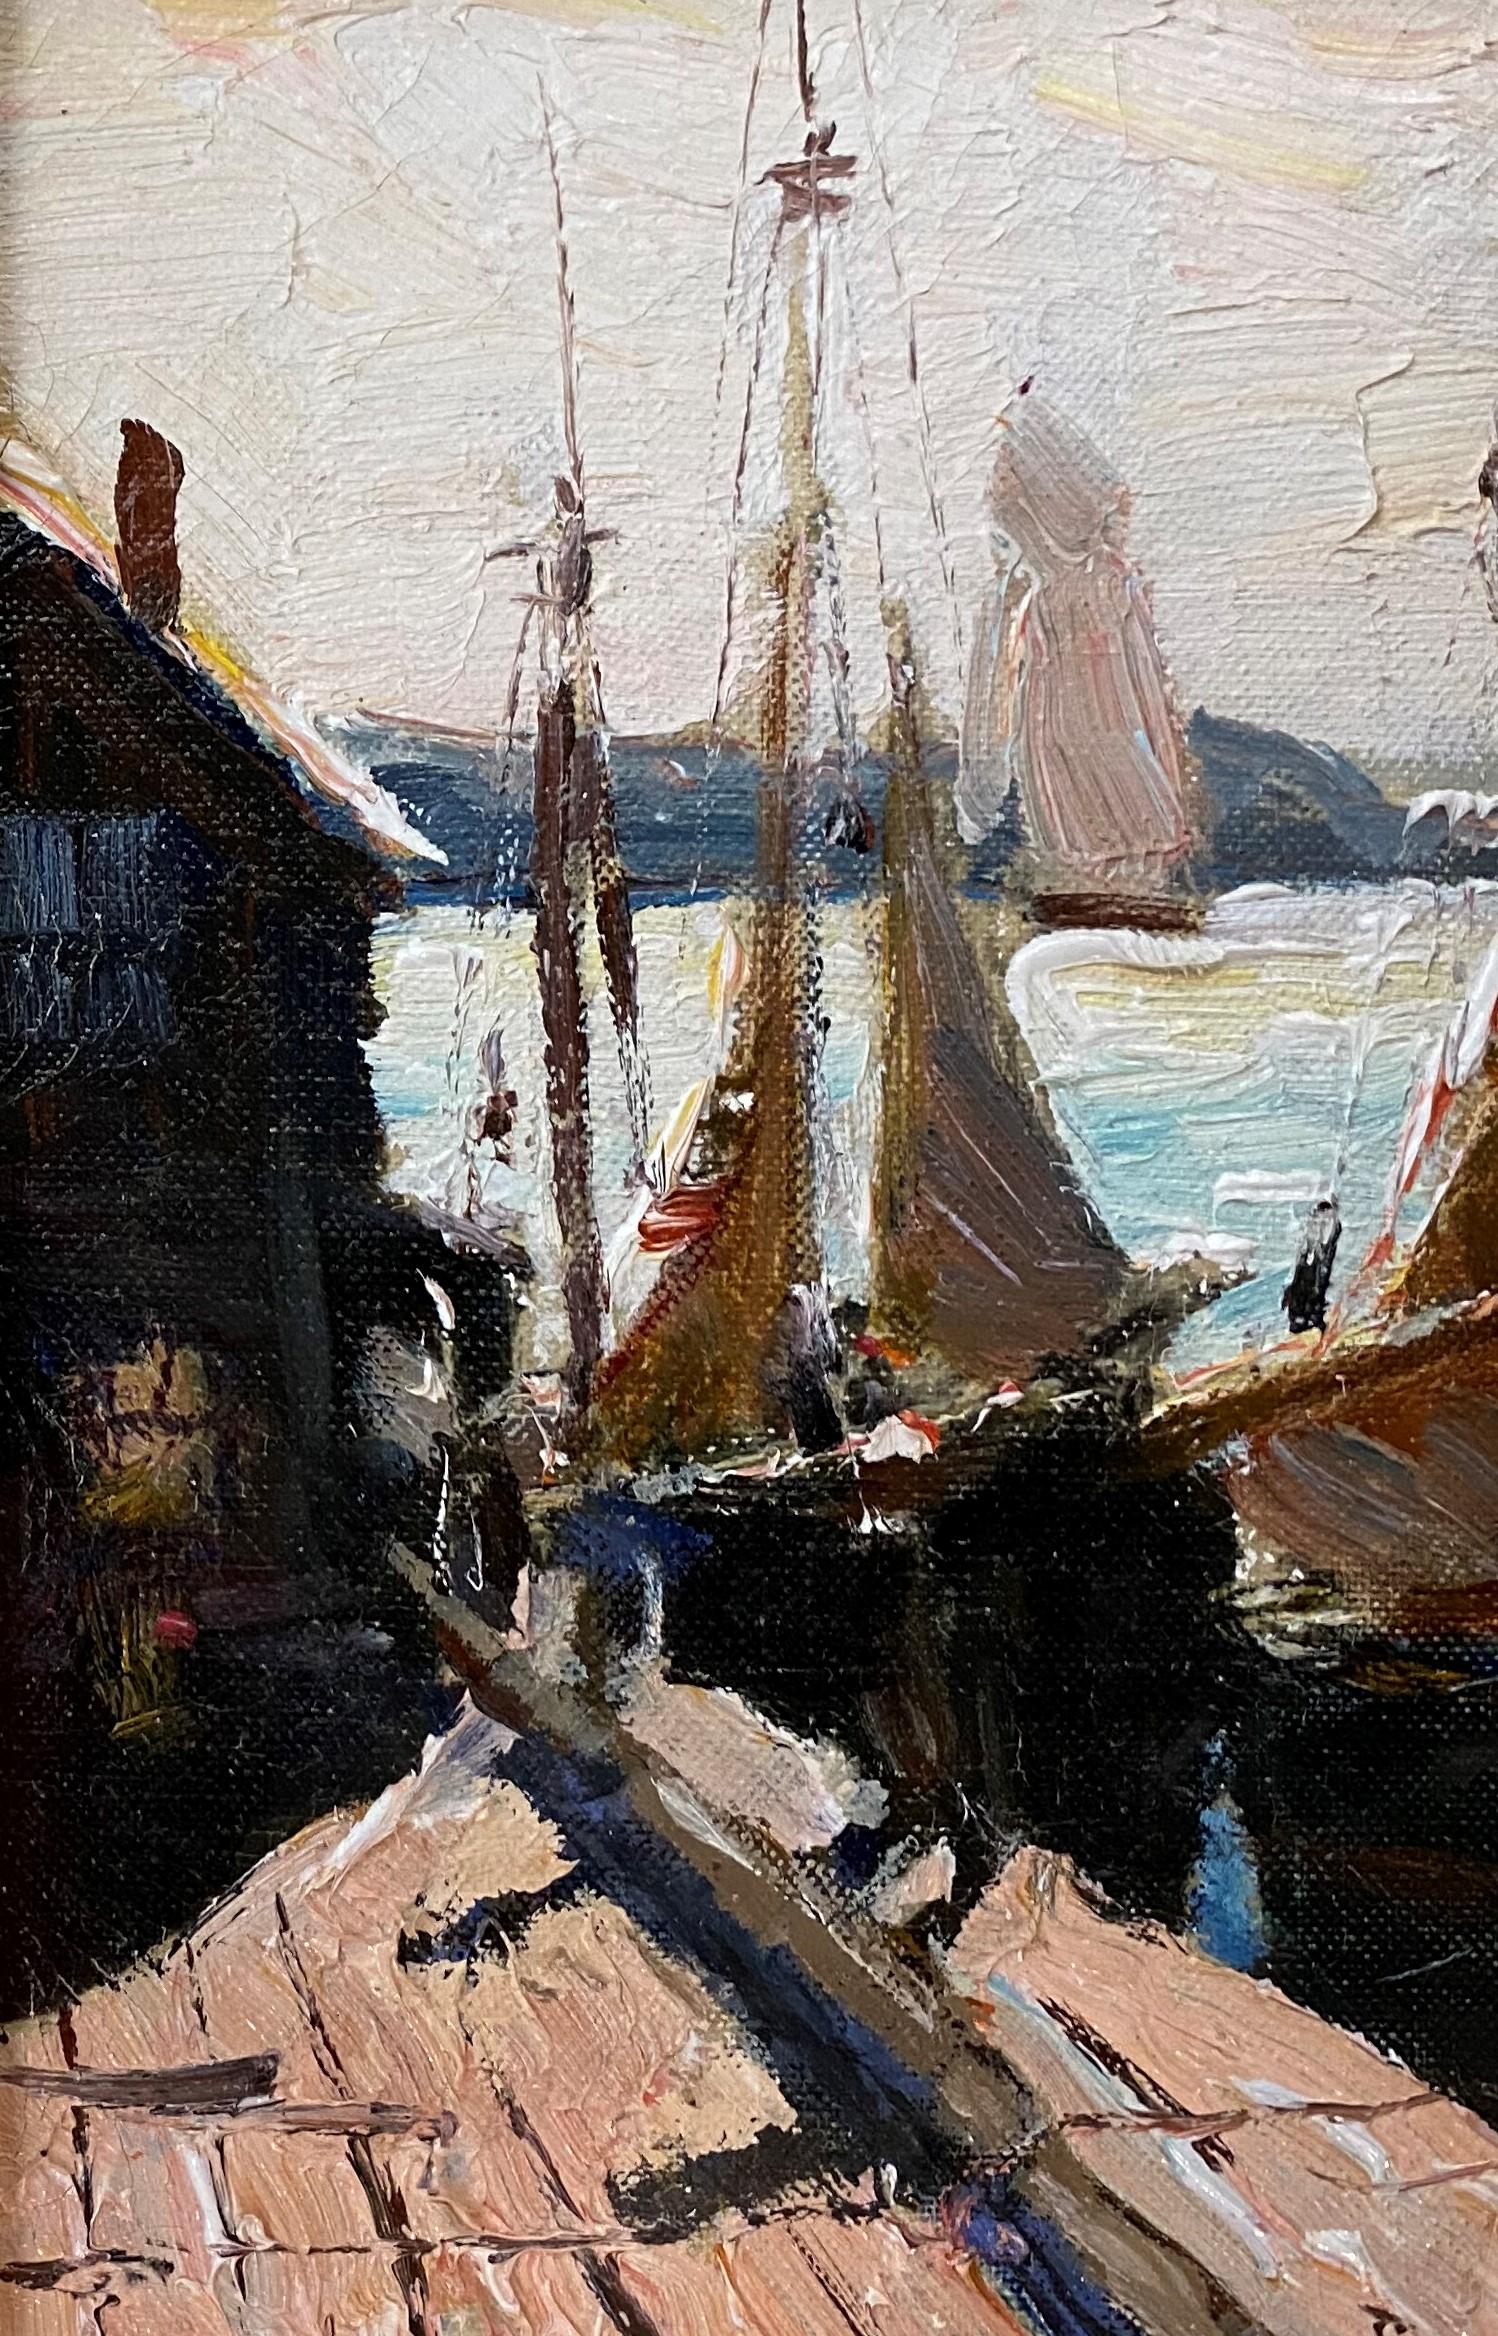 Ein schönes impressionistisches Gemälde von im Hafen angedockten Booten des niederländisch-amerikanischen Künstlers Anthony Thieme (1888-1954). Thieme wurde in Rotterdam, Holland, geboren. Nach Reisen durch Europa, England und Südamerika ließ er